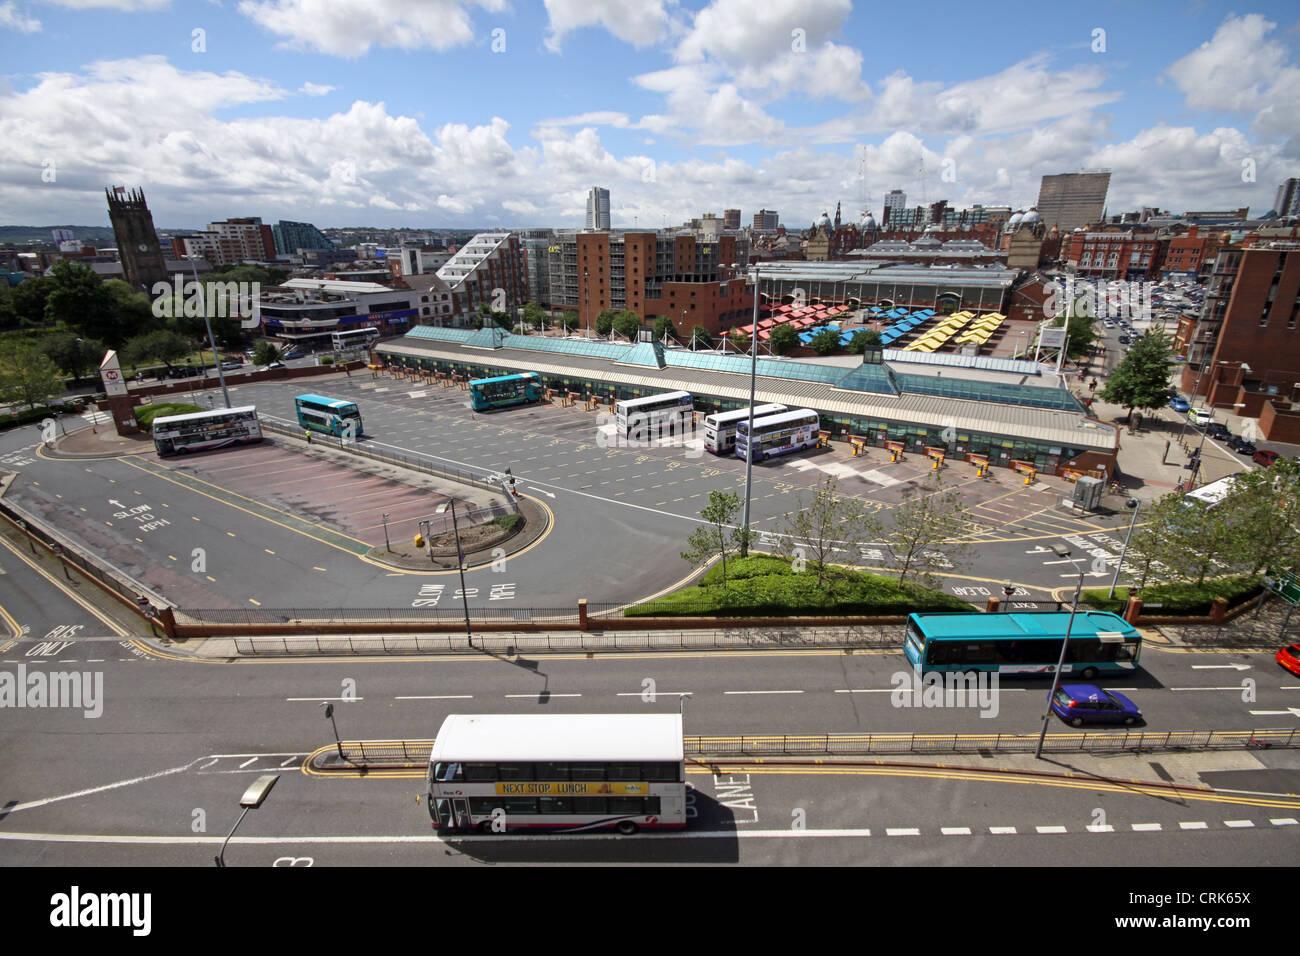 Vue de la gare routière de la ville de Leeds Banque D'Images